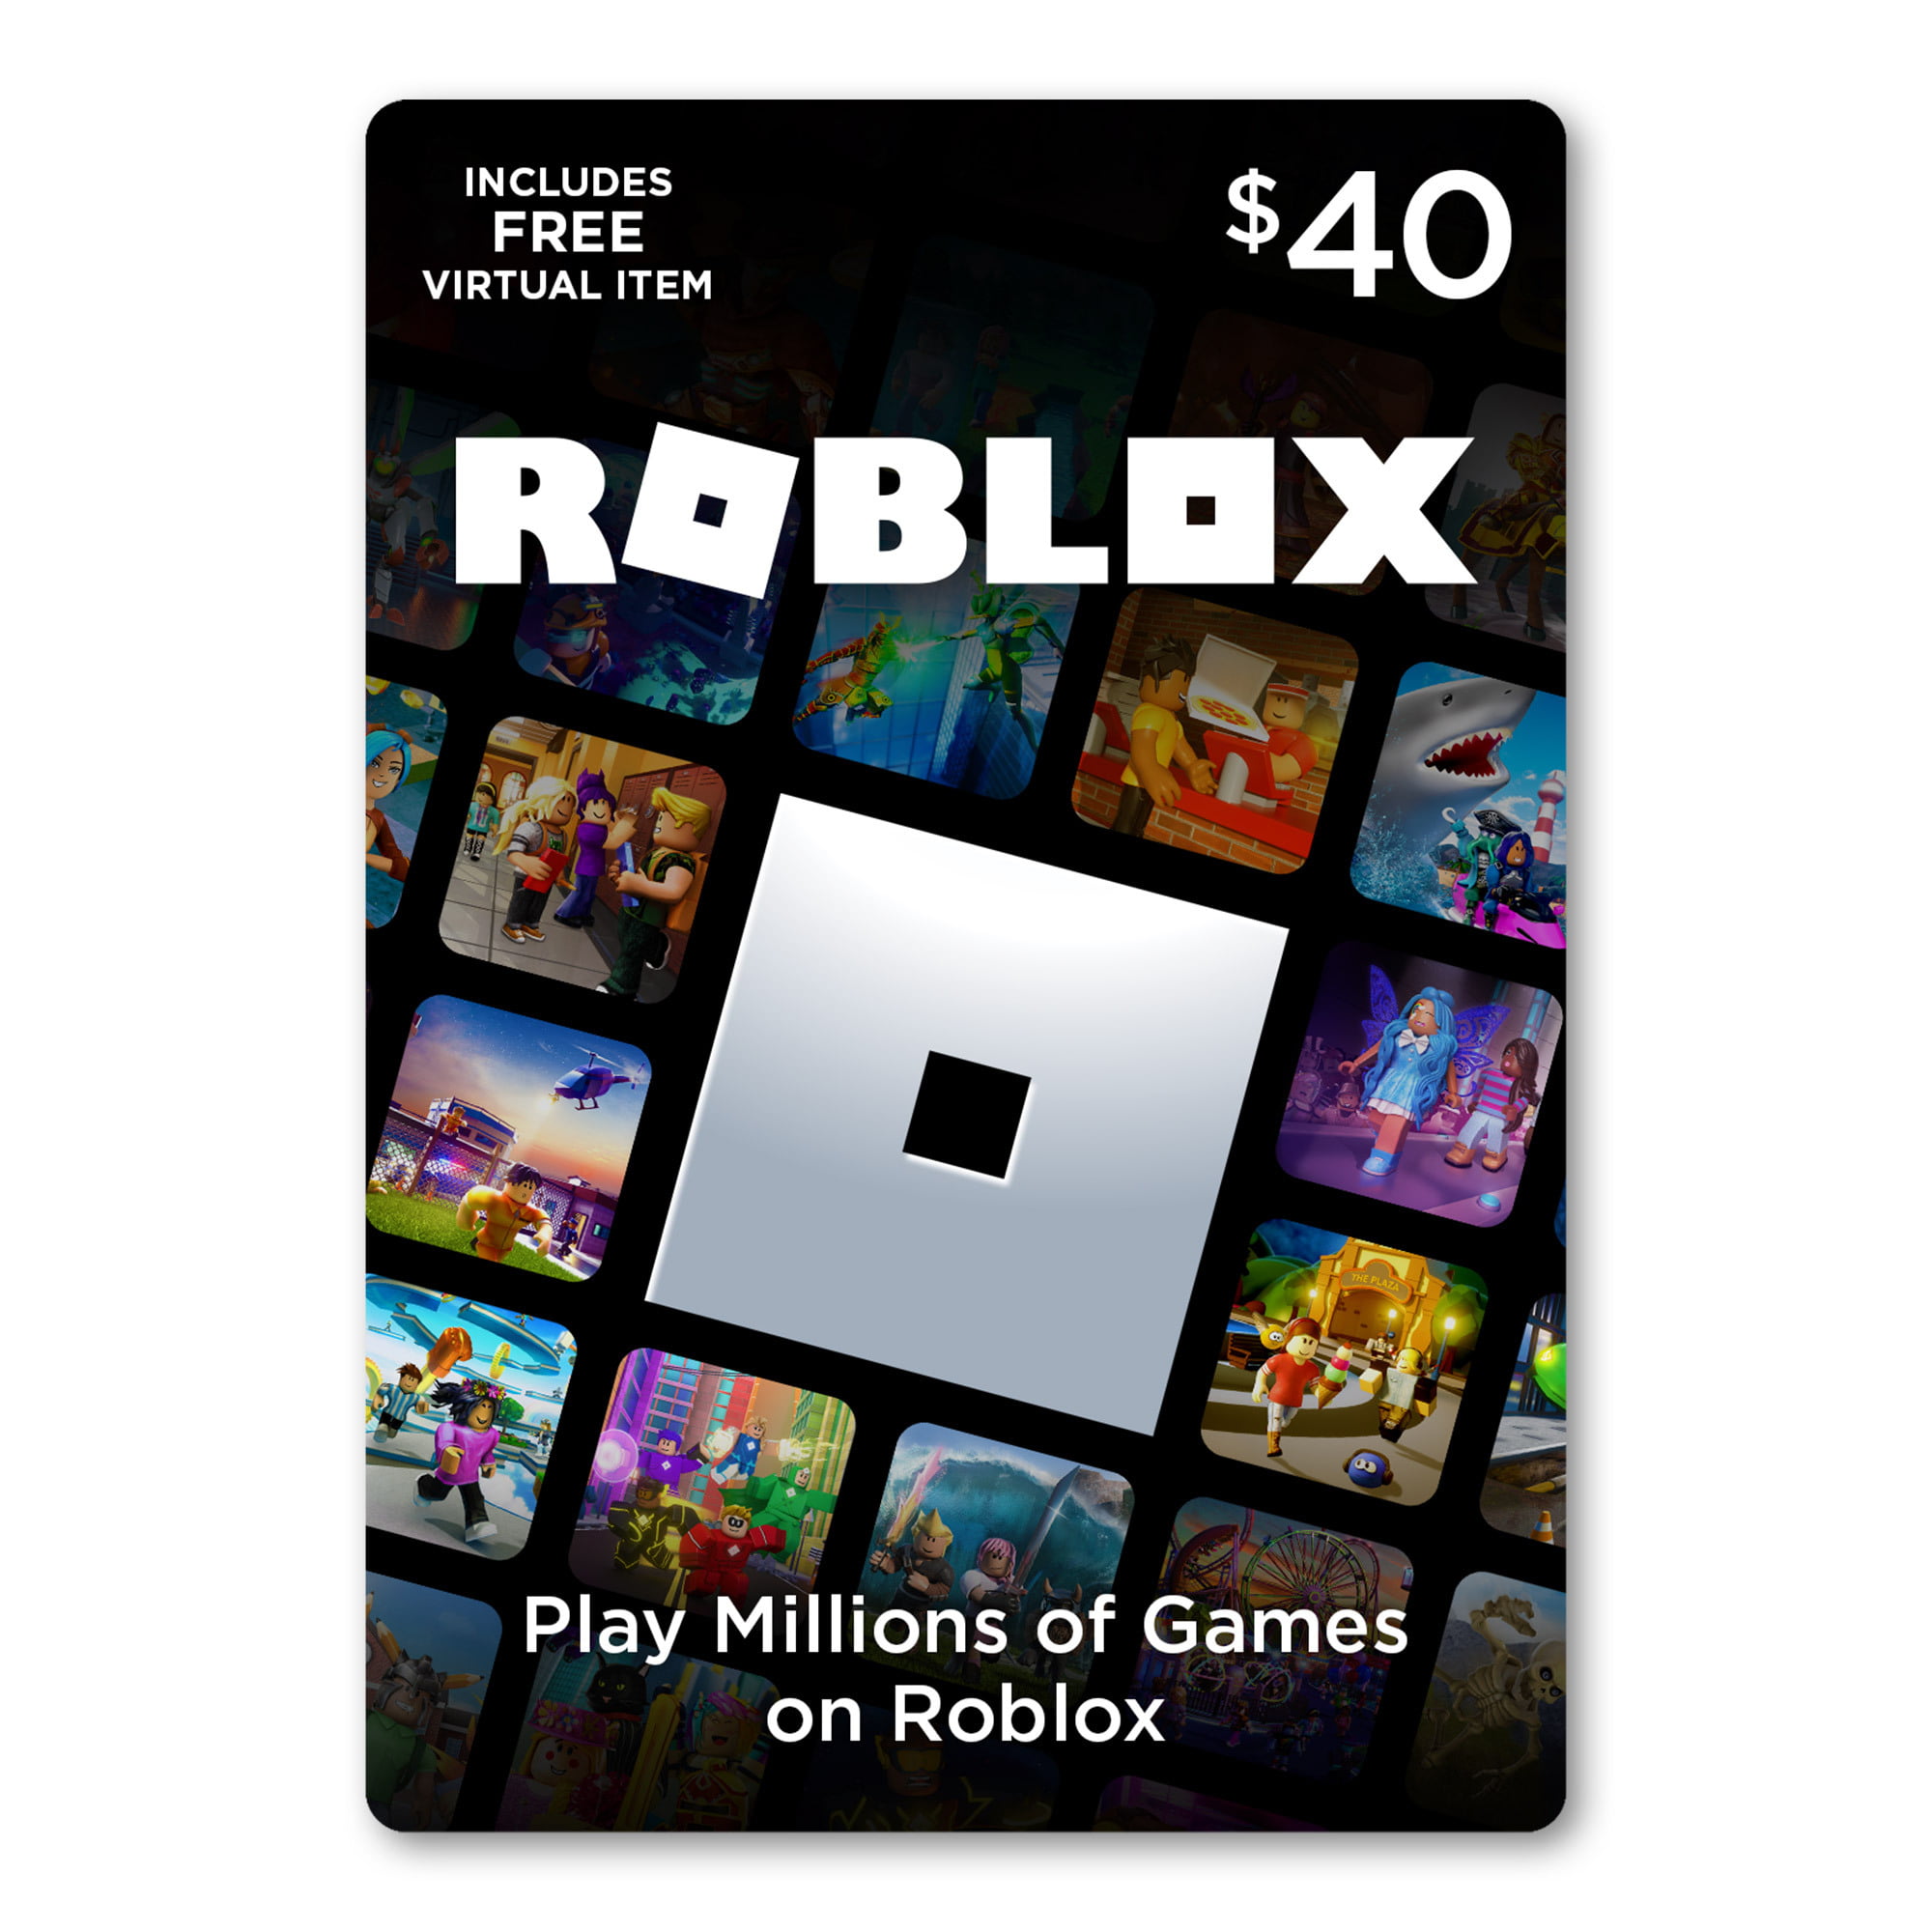 Roblox 40 Digital Gift Card Includes Exclusive Virtual Item Digital Download Walmart Com Walmart Com - roblox favorites art